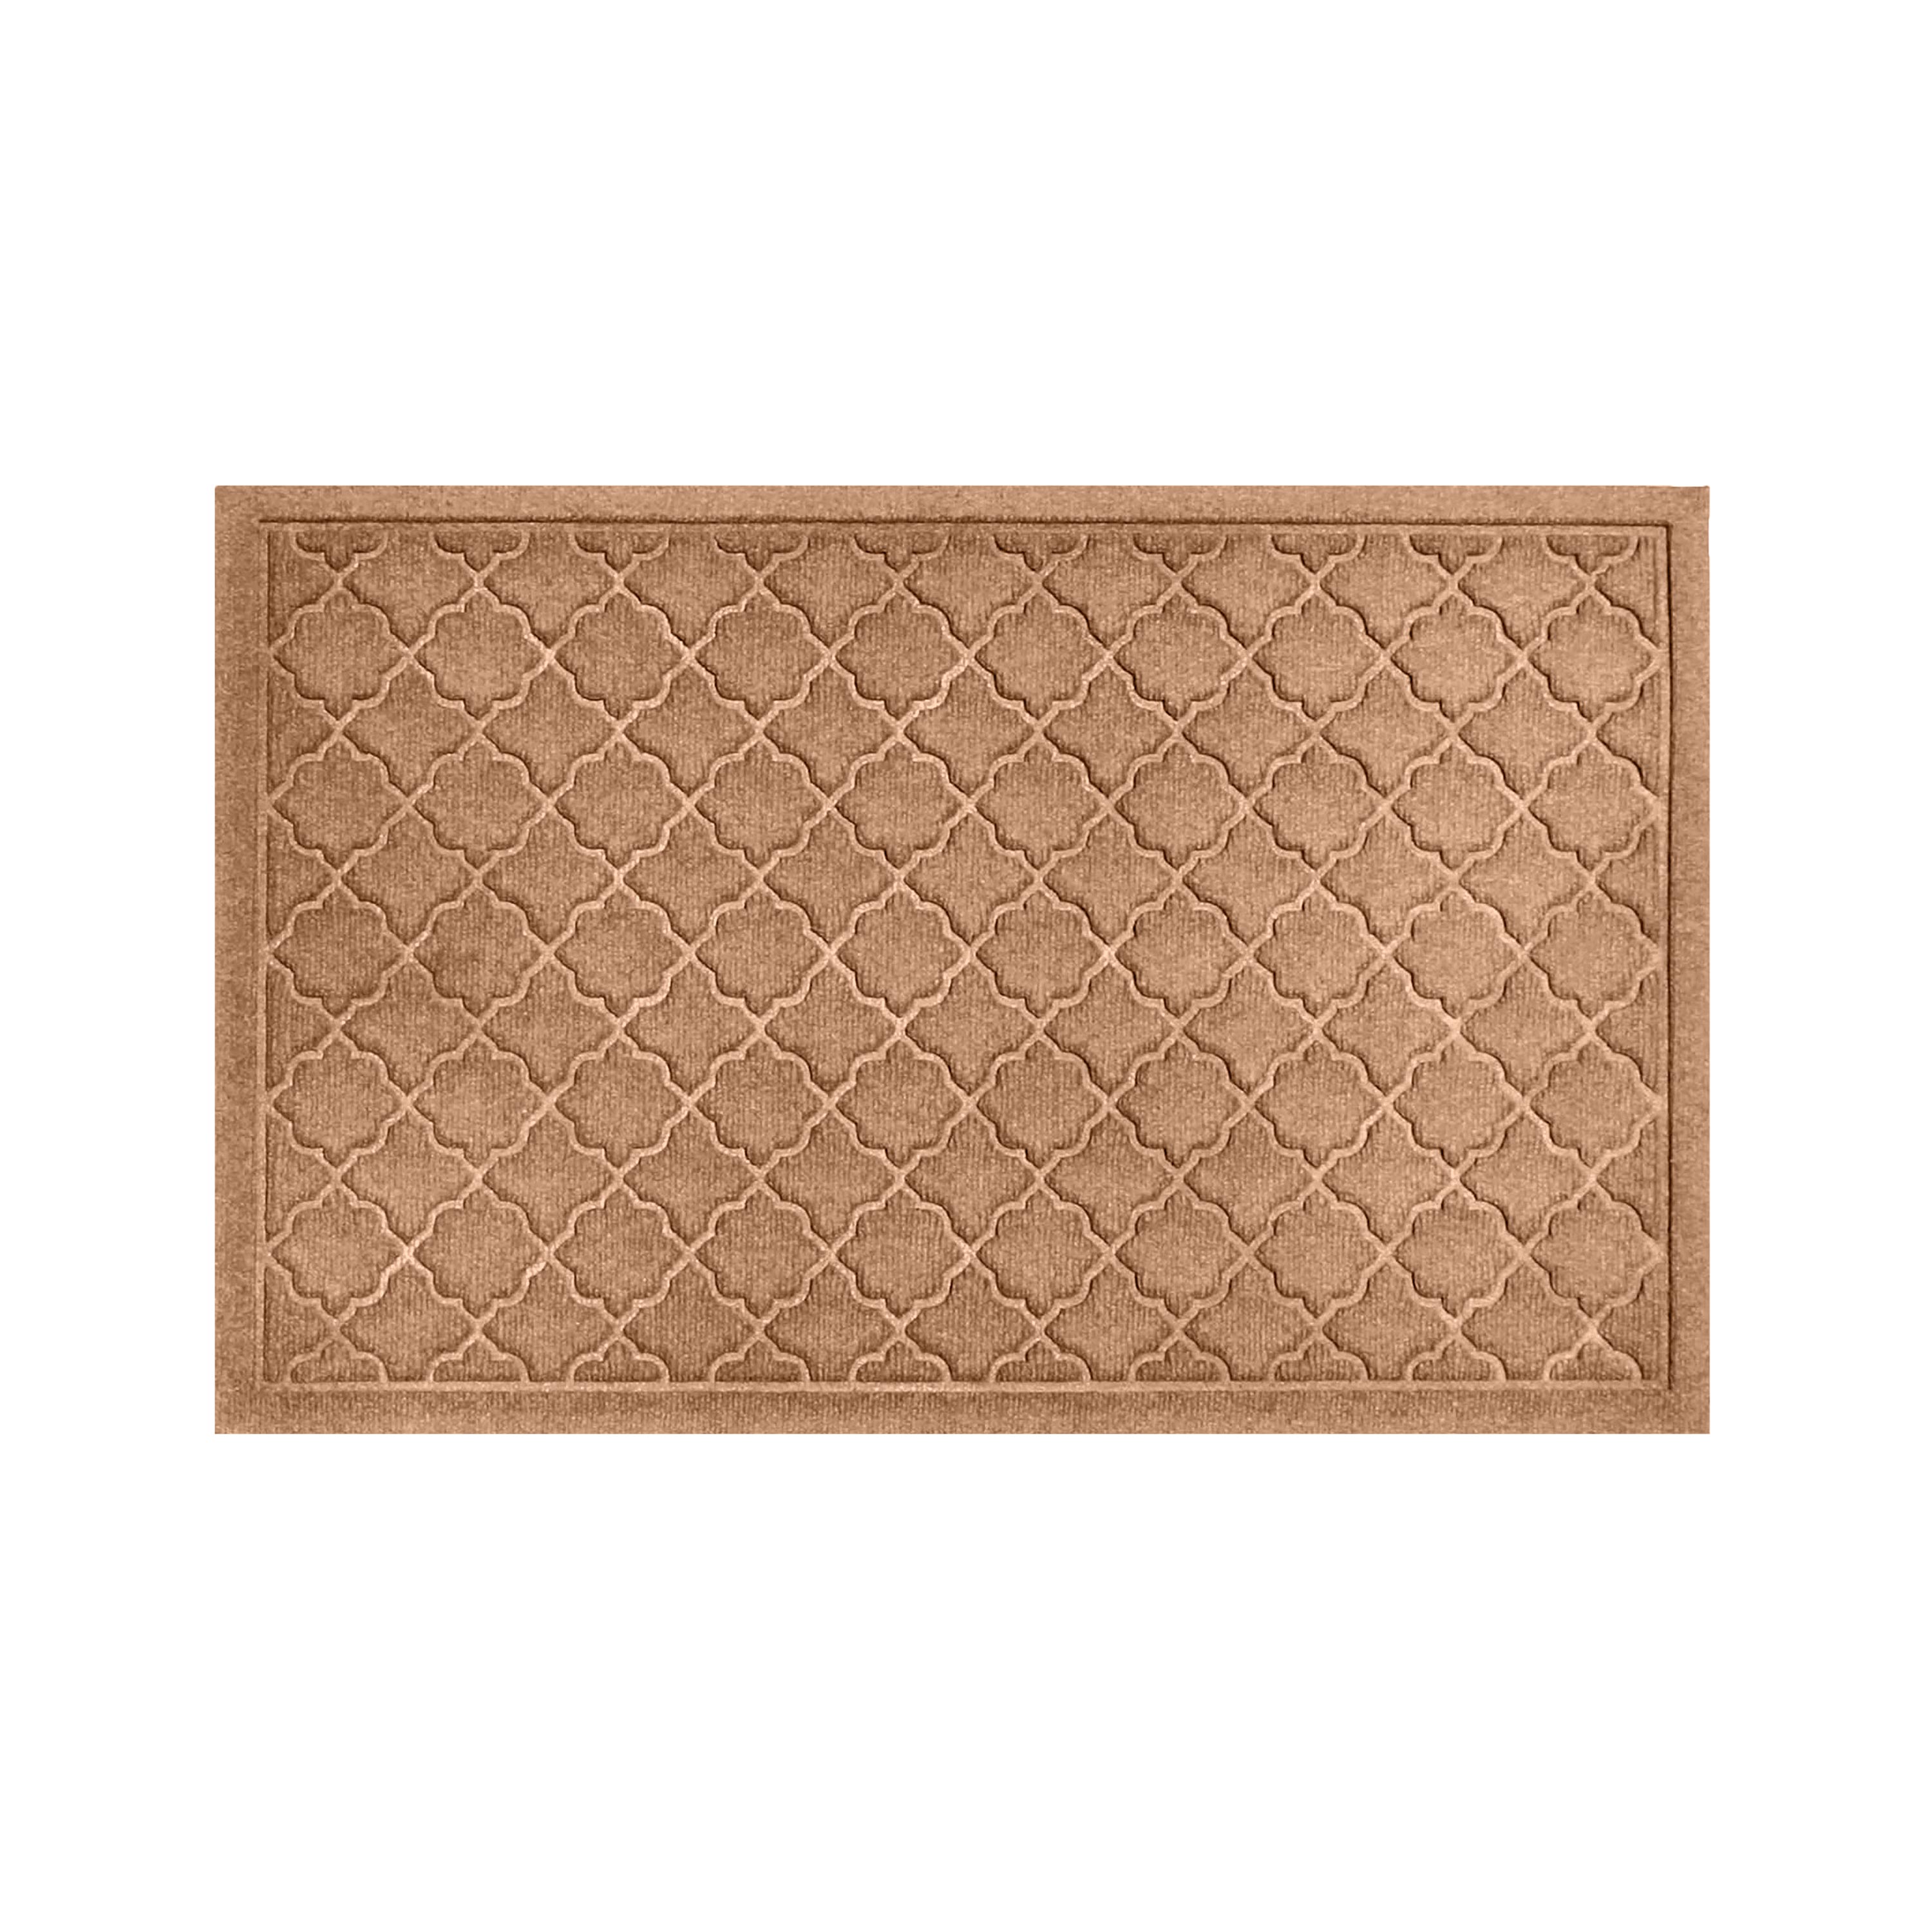 Waterhog Indoor/Outdoor Geometric Doormat, 22" x 60" - Camel